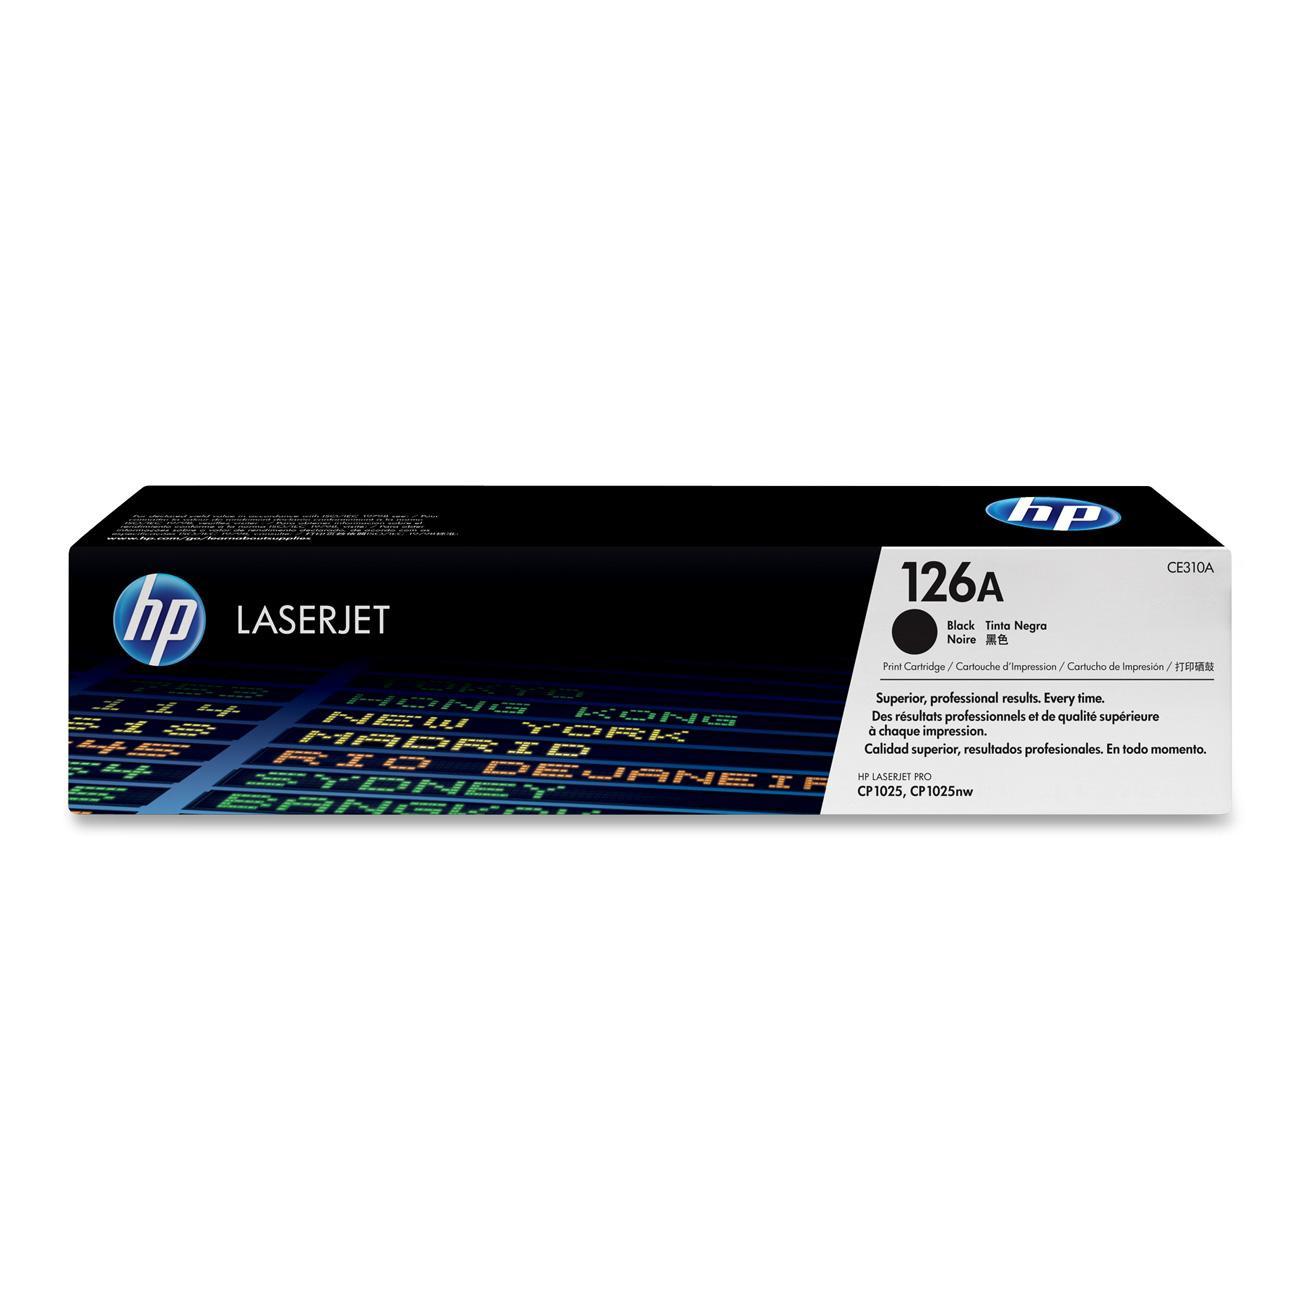 HP LaserJet CE310A Black Print Cartridge